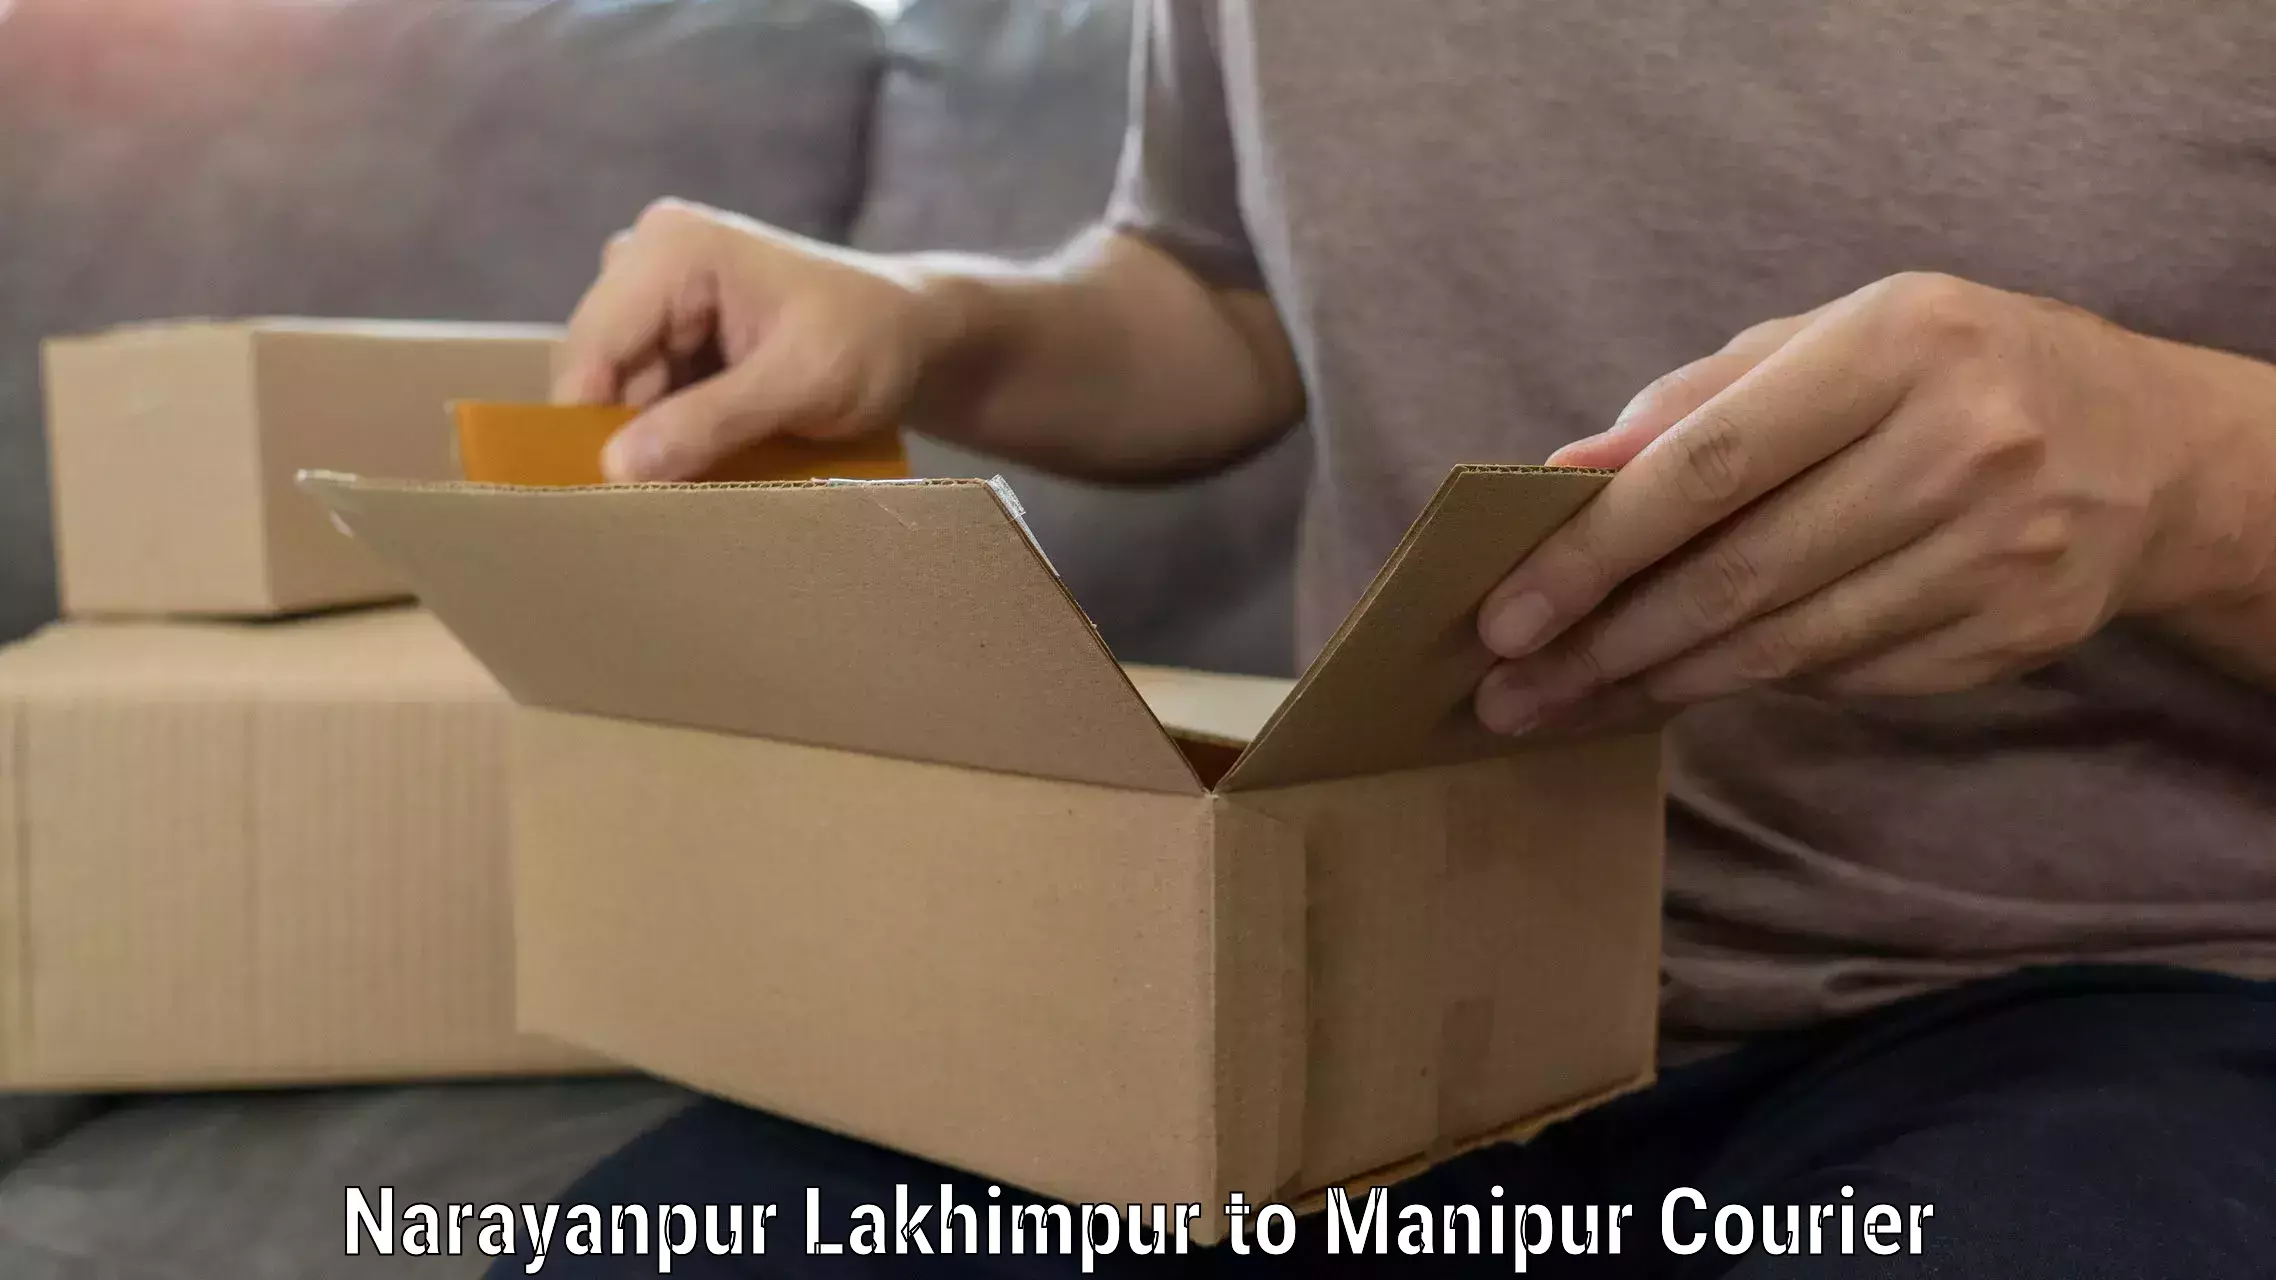 Home moving experts Narayanpur Lakhimpur to Senapati